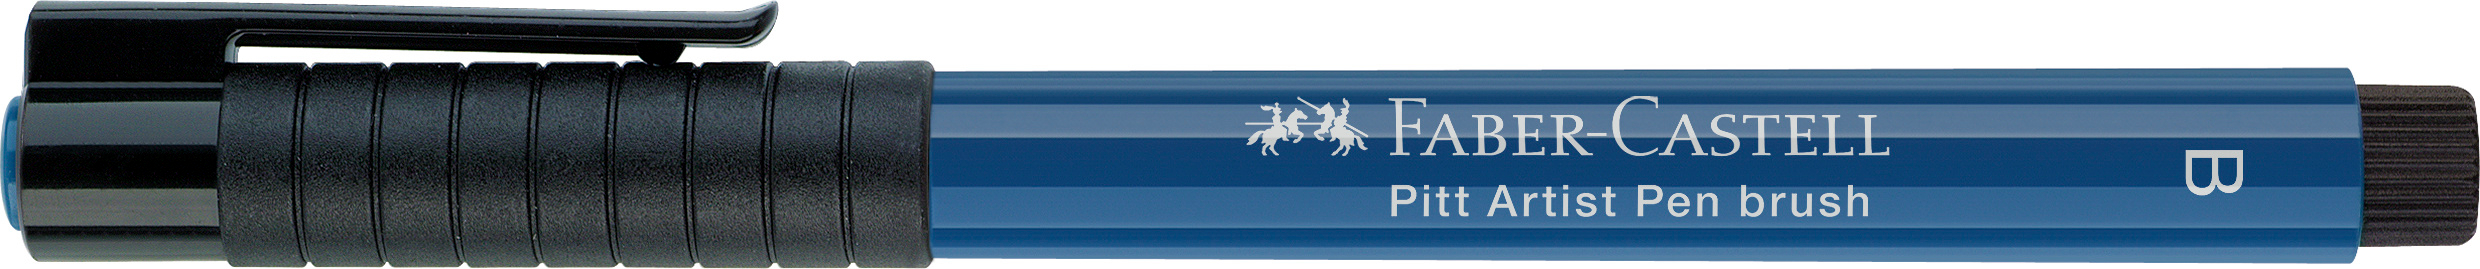 FABER-CASTELL Pitt Artist Pen Brush 2.5mm 167447 indanthren blue indanthren blue